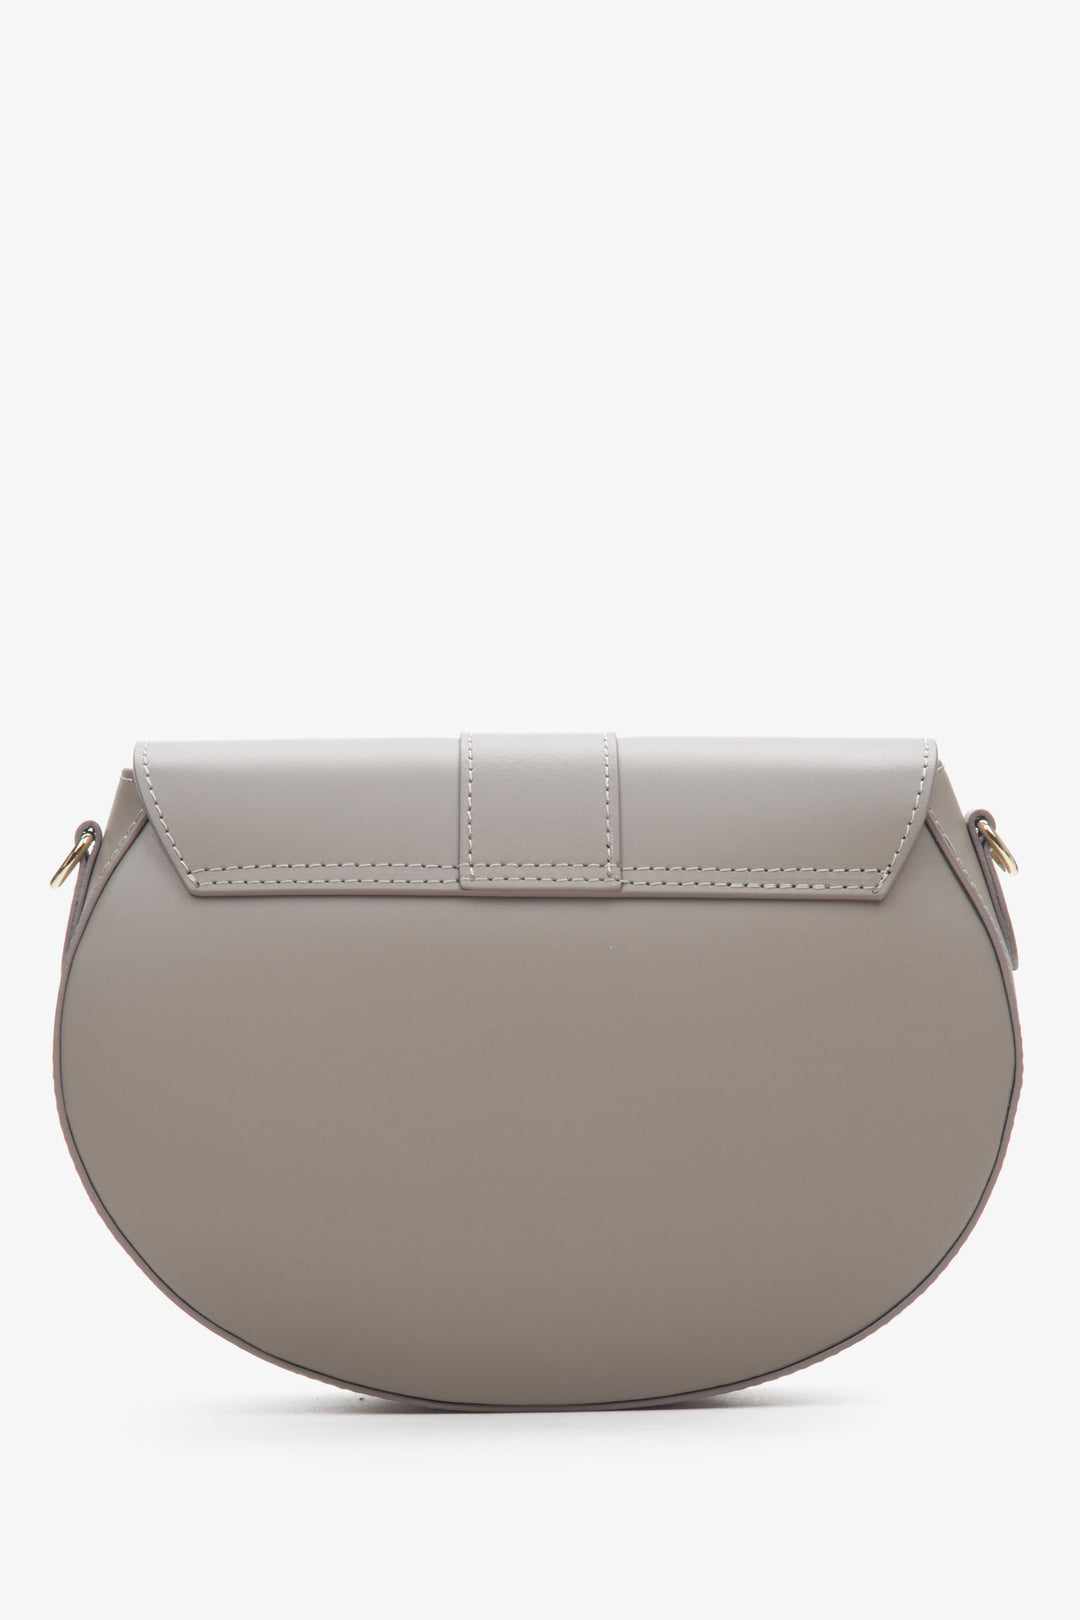 Grey leather handbag Estro - reverse.